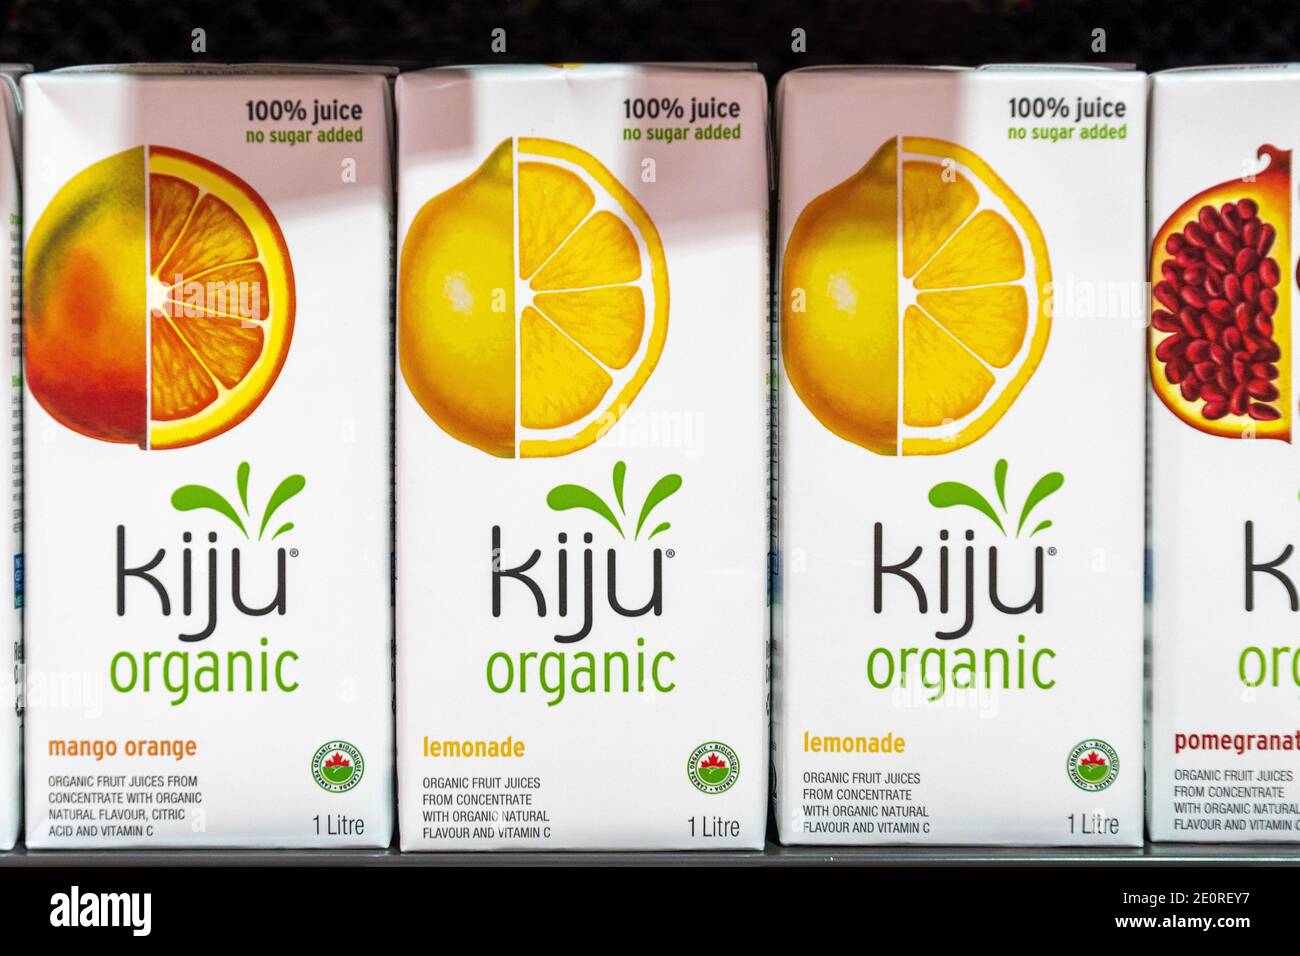 Boîtes de jus bio de marque Kiju. Il y a des saveurs de mangue, de limonade et de grenade. Les boîtes sont visibles sur une étagère de magasin. Il n'y a pas de personnes moi Banque D'Images